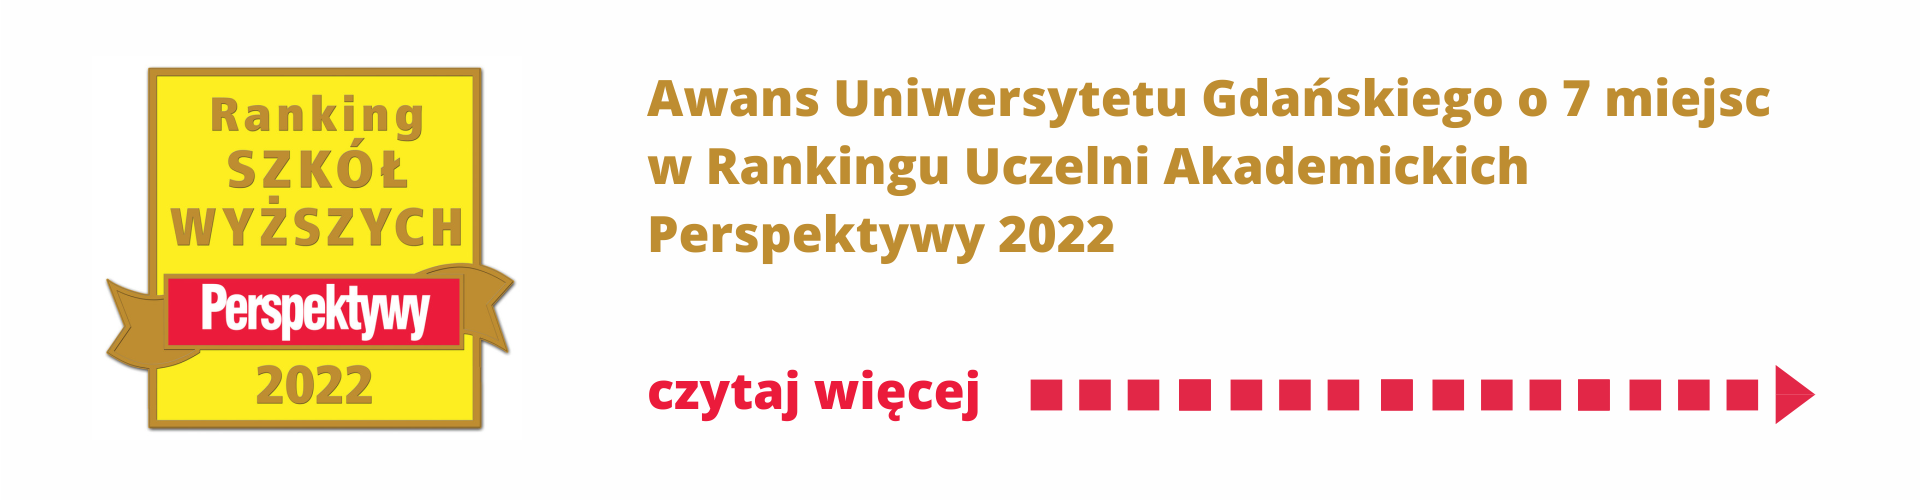 Awans Uniwersytetu Gdańskiego o 7 miejsc w Rankingu Uczelni Akademickich Perspektywy 2022 - czytaj więcej